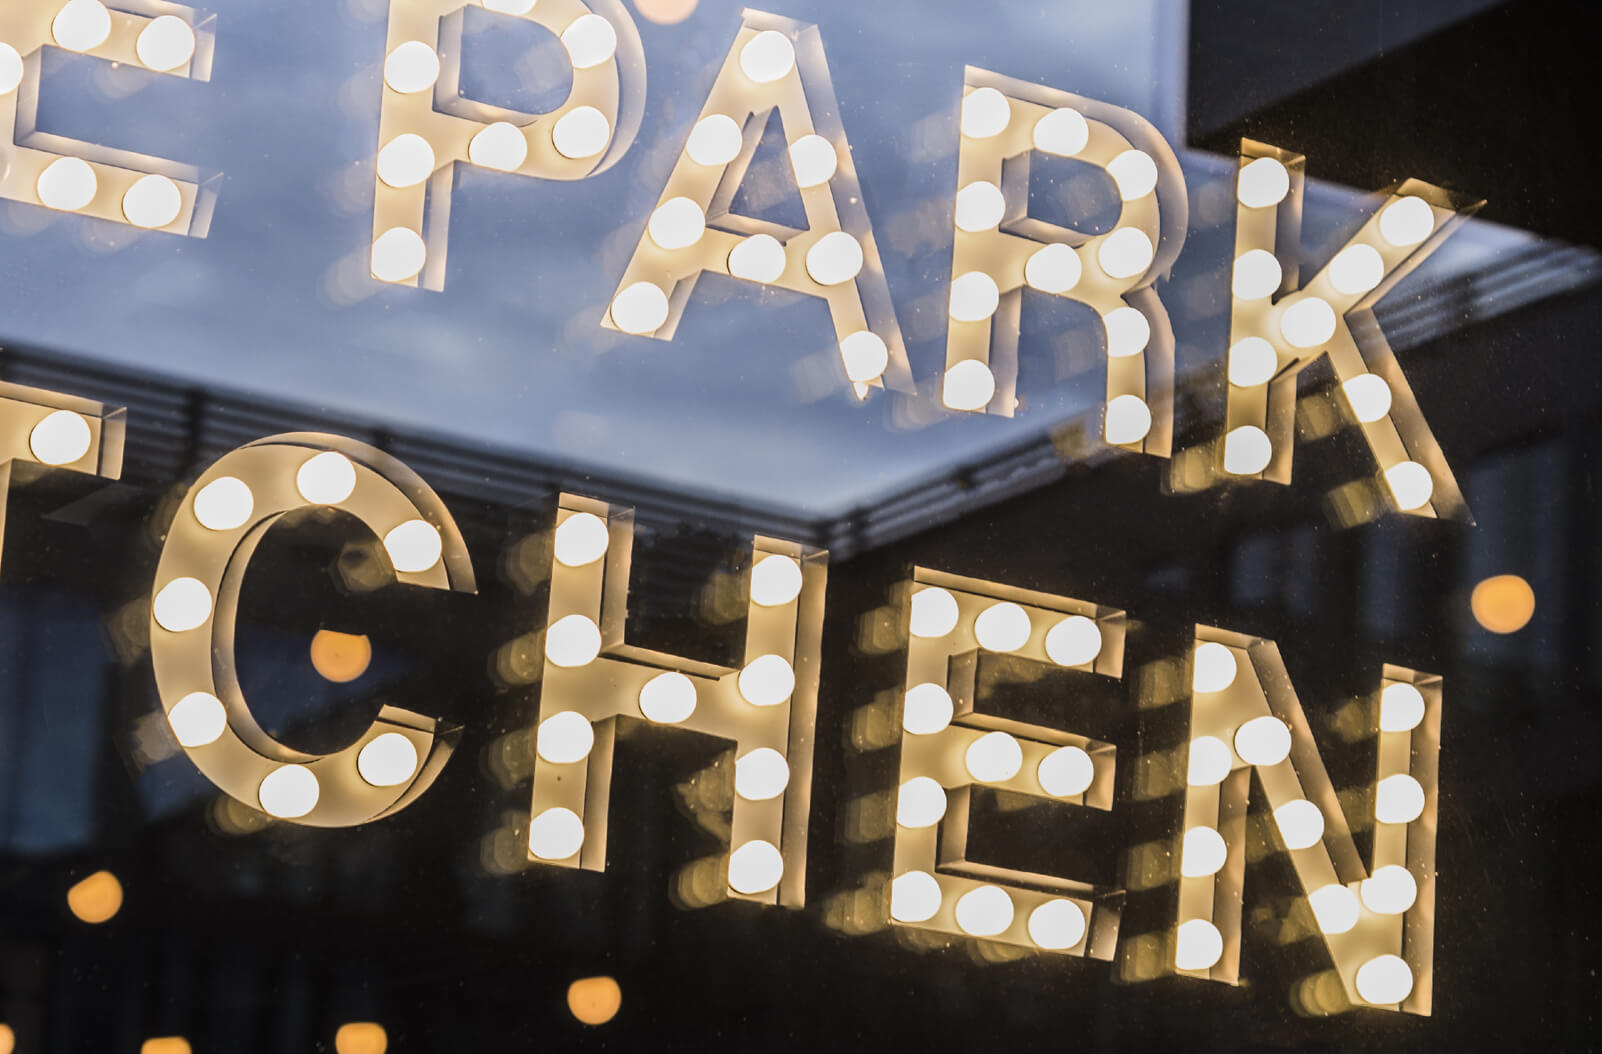 Die Park-Küche - The Park Kitchen - kleine Buchstaben mit Glühbirnen hinter dem Glas